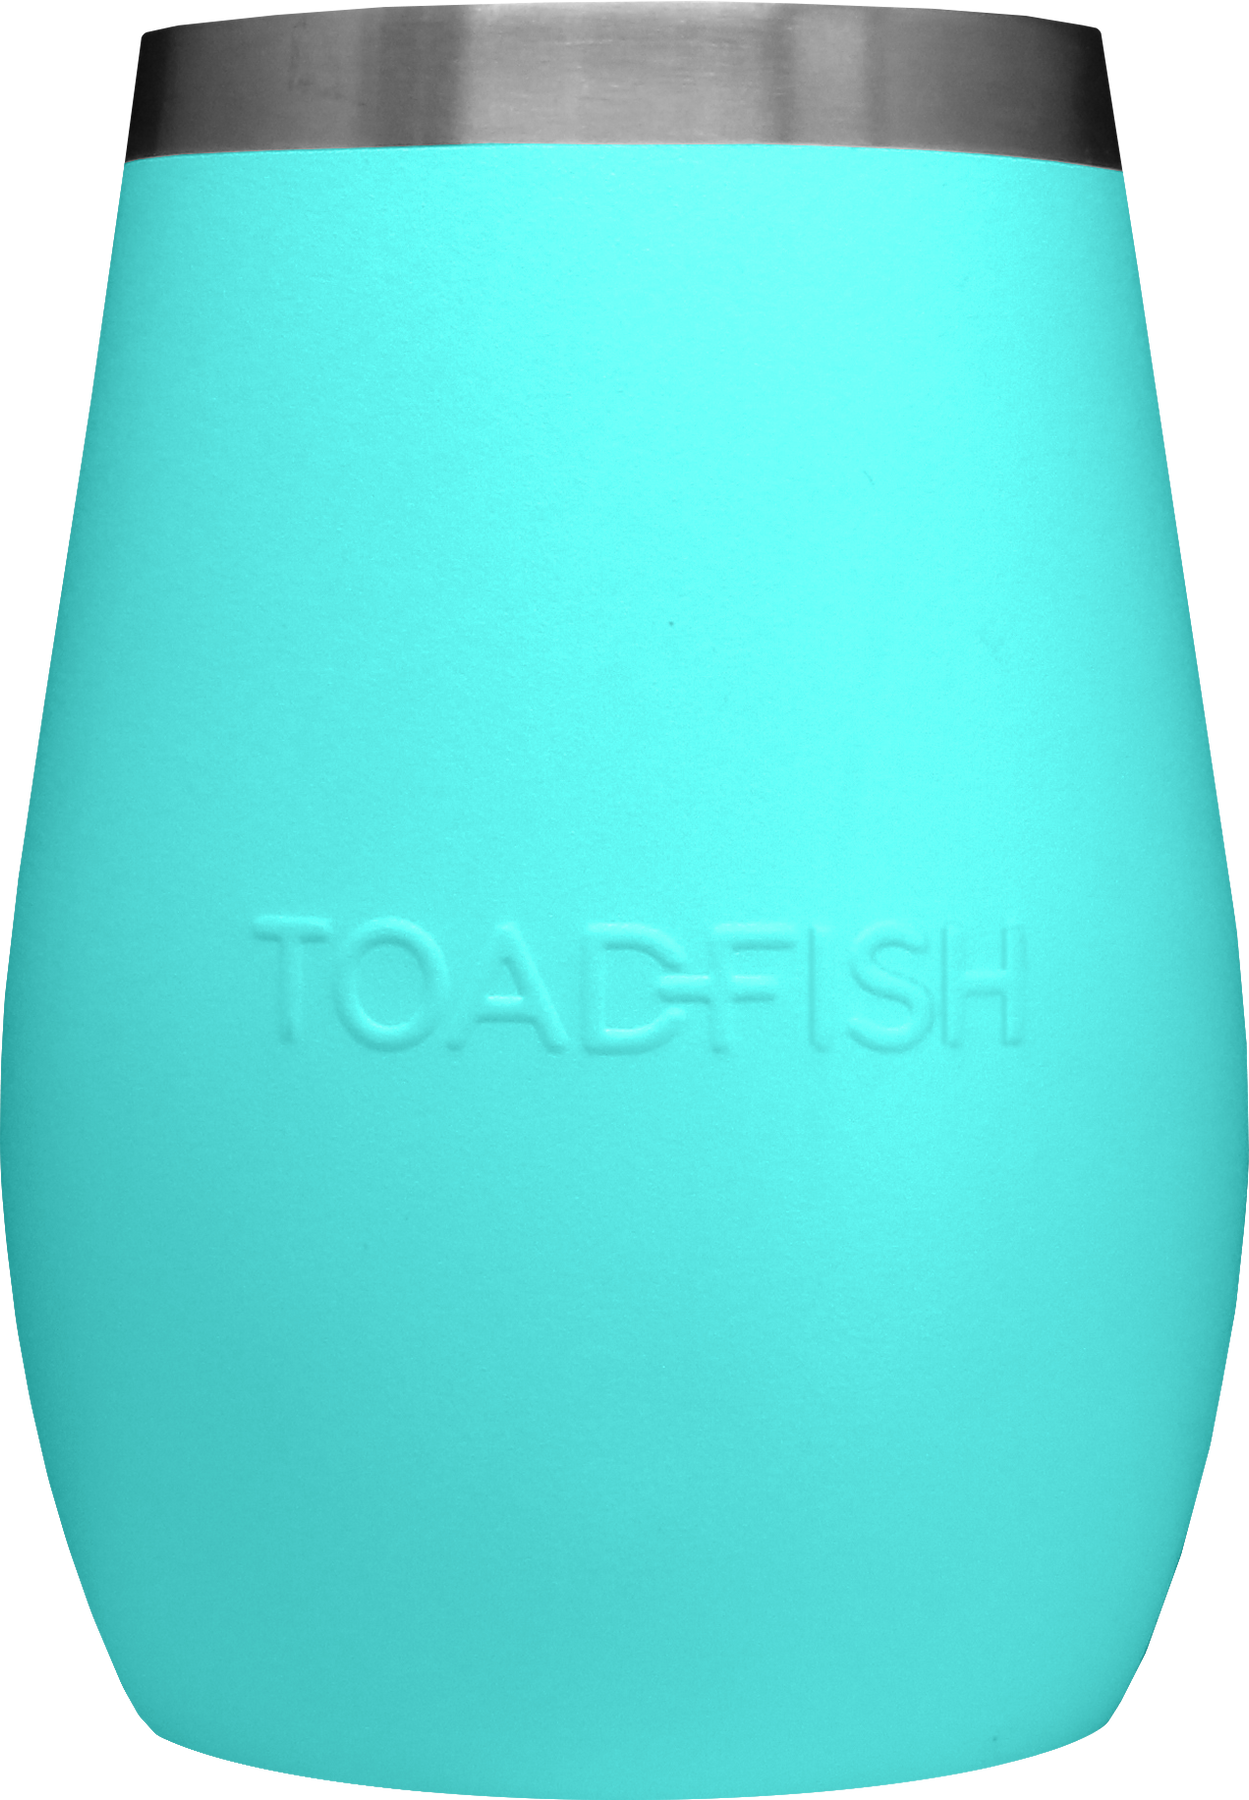 Toadfish 20oz Non-Tipping Tumbler - White